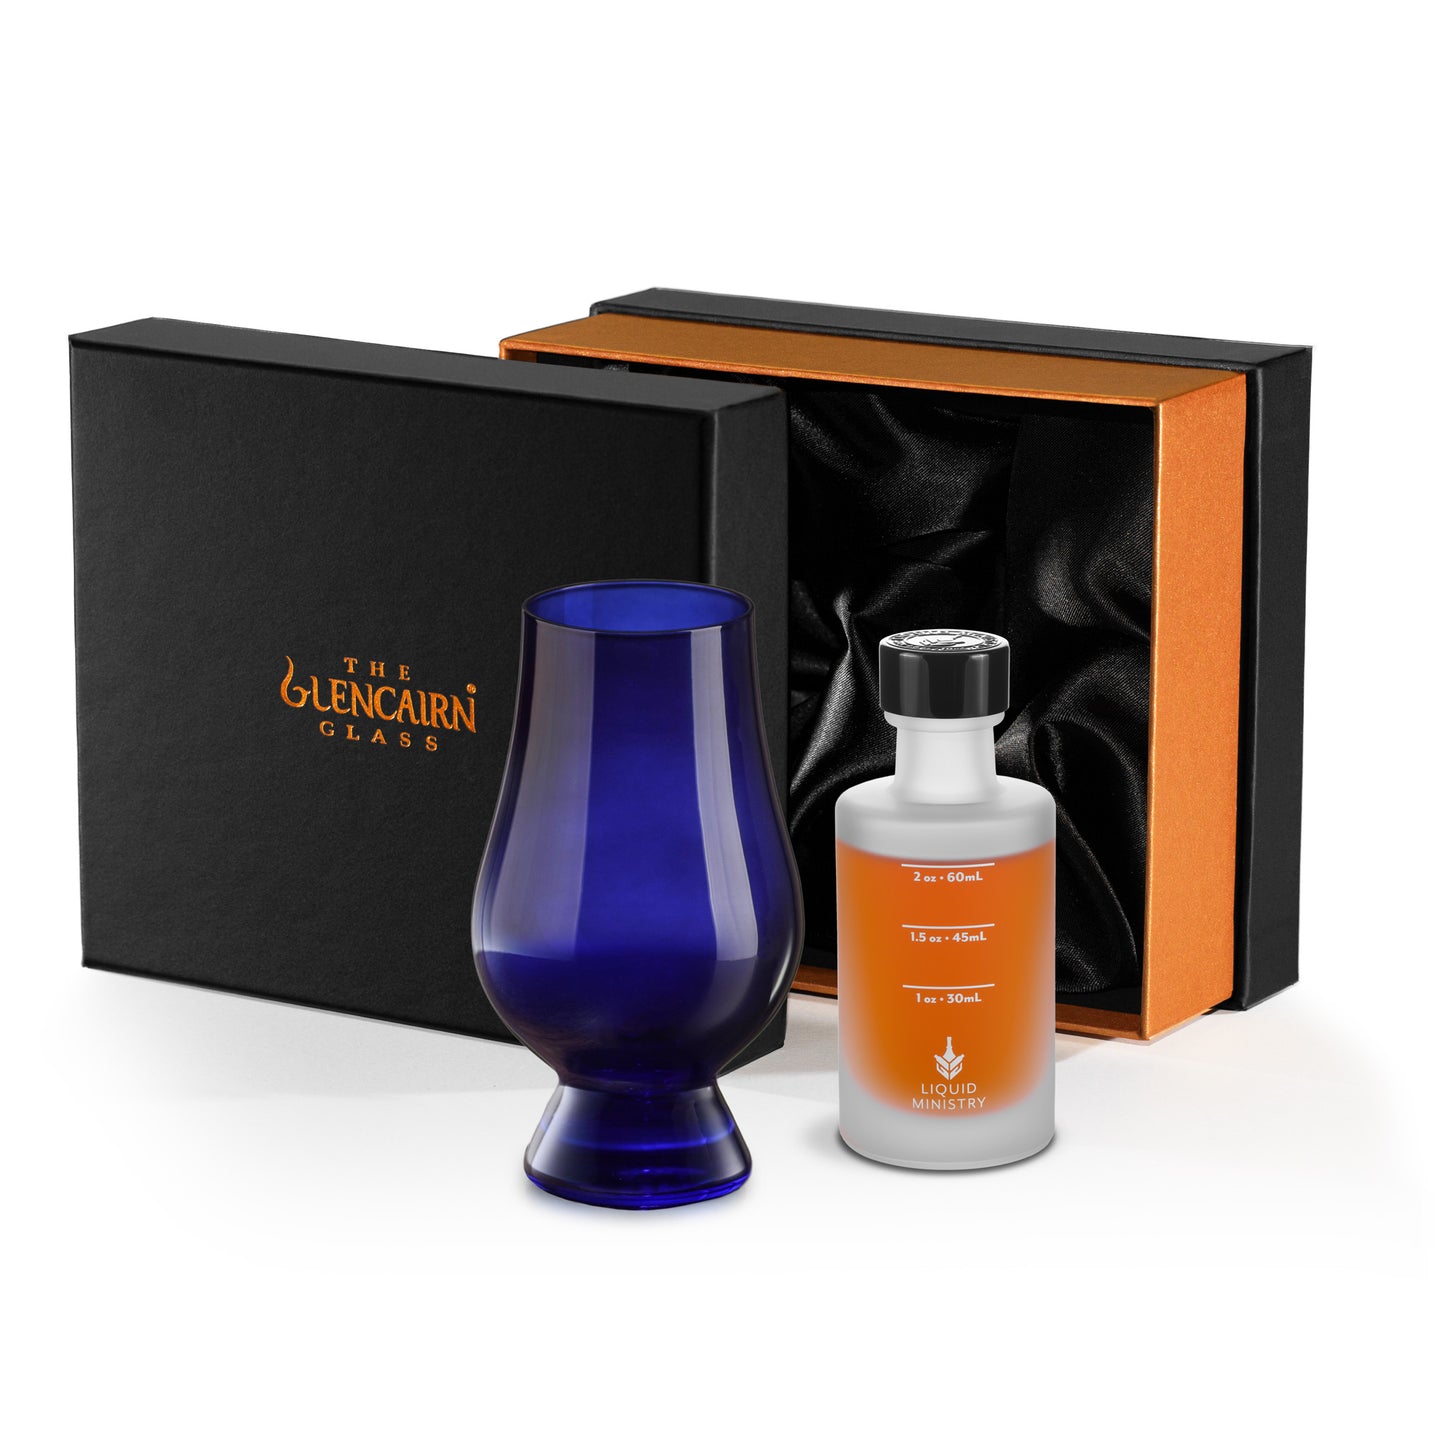 Glencairn Glass & Sample Bottle Gift Set